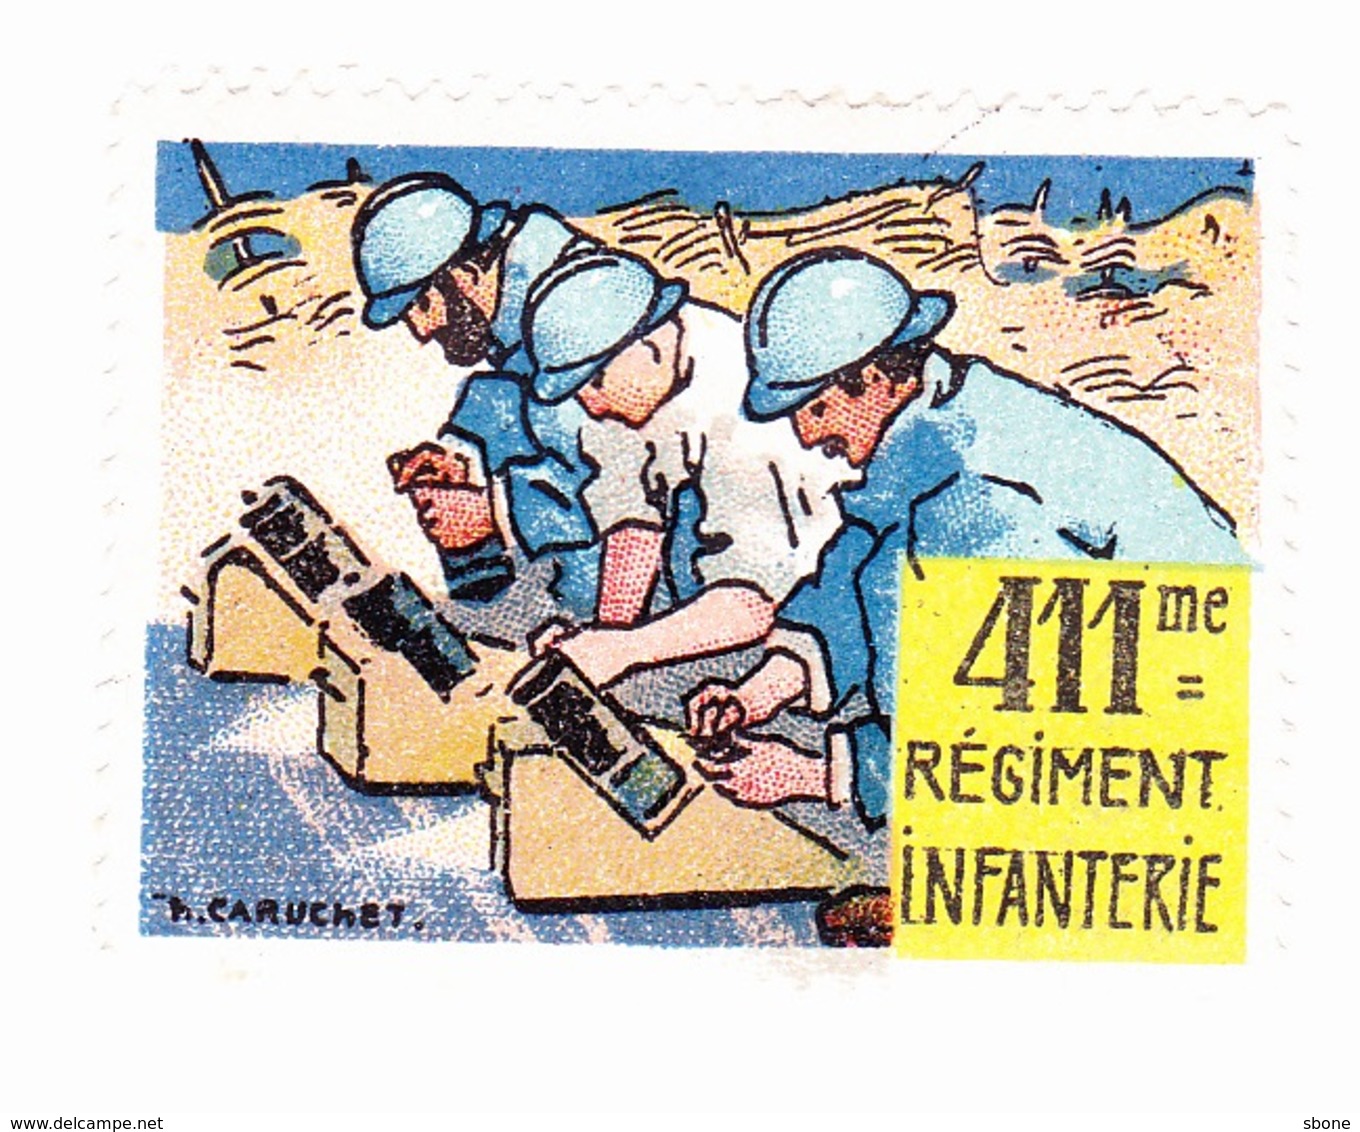 Vignette Militaire Delandre - 411ème Régiment D'infanterie - Military Heritage